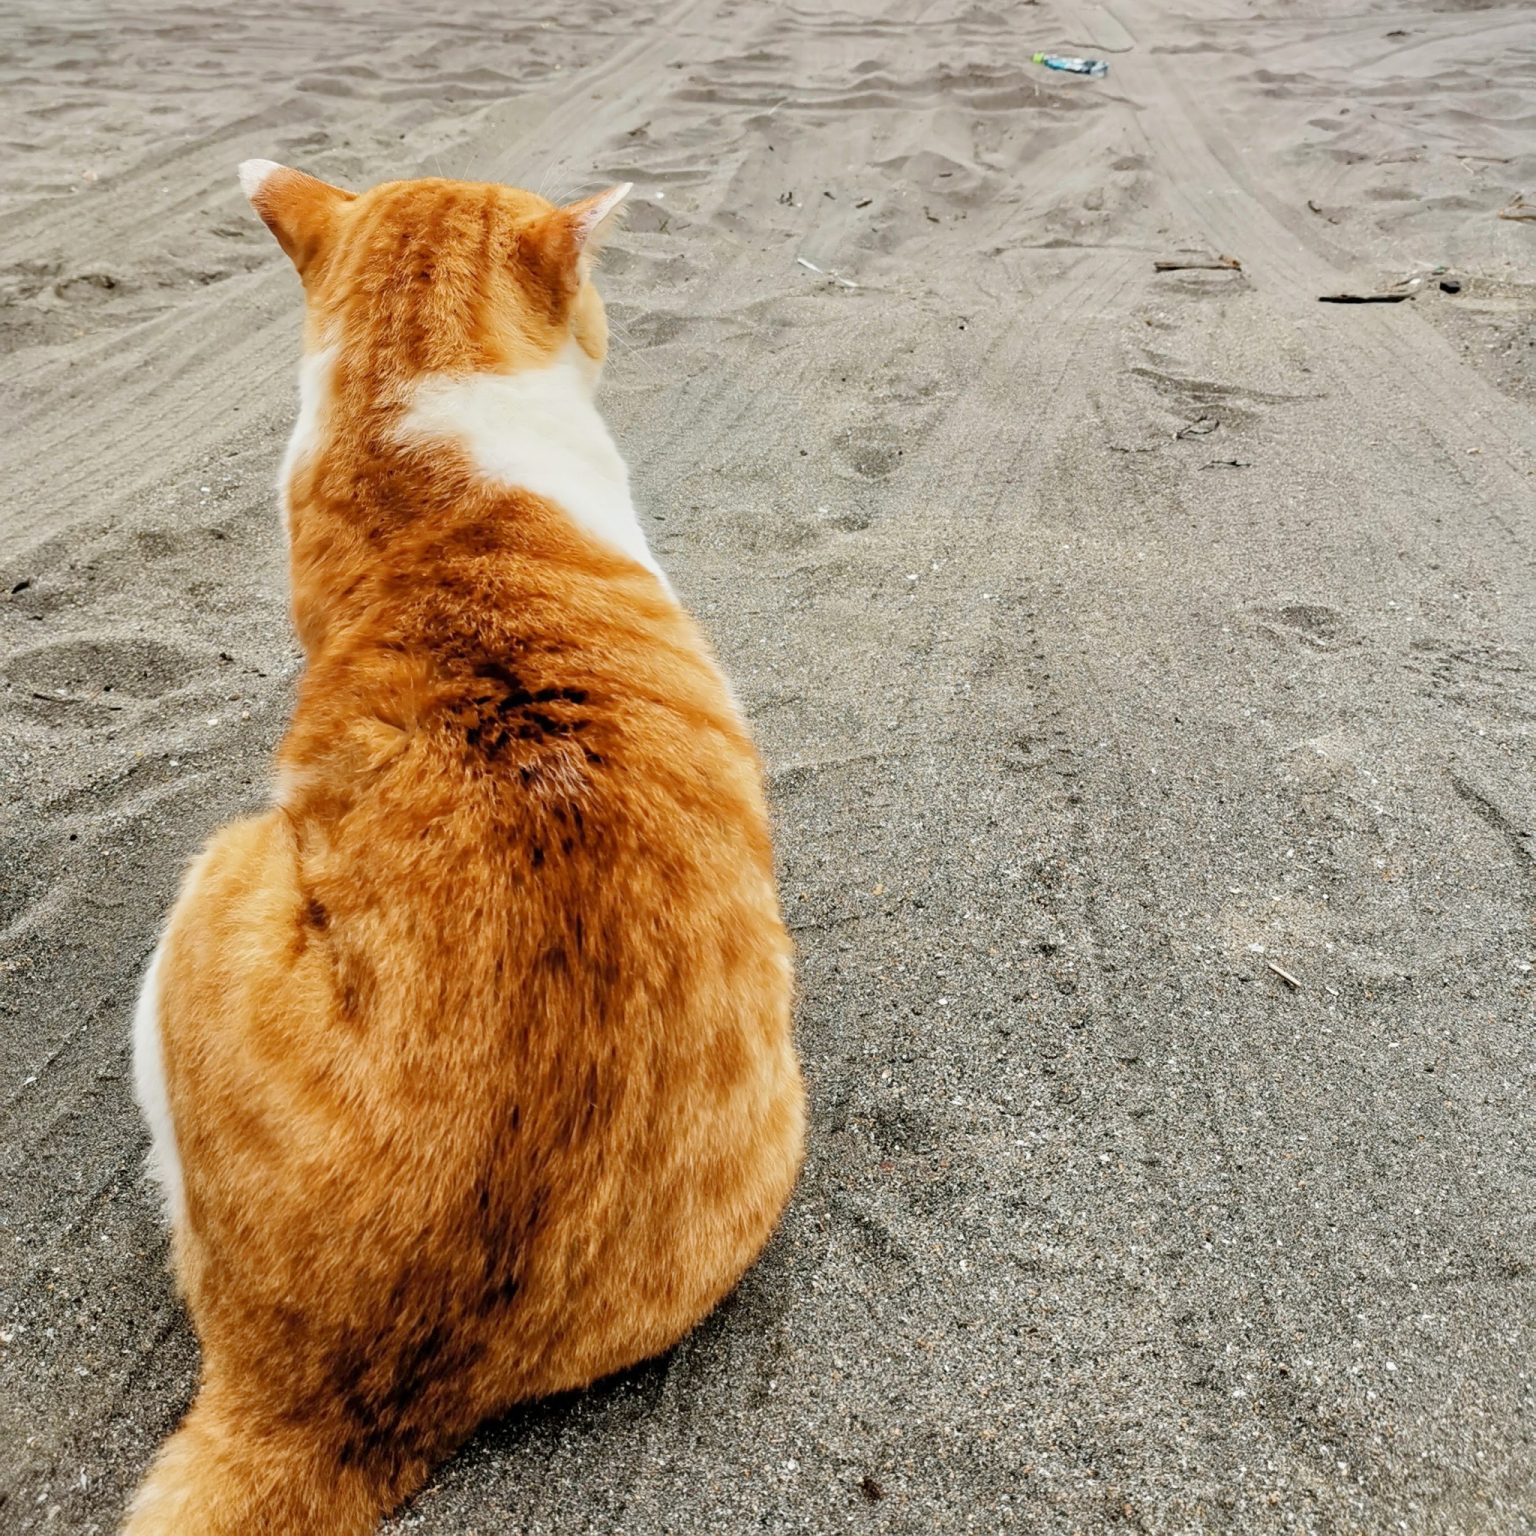 材木座海岸で猫のキイロ先生と。のんびり海を眺める時間は、この界隈ならではの贅沢。御用邸裏手に広がる“小磯の鼻”など、自宅アトリエに近い葉山の海岸線もお気に入り。